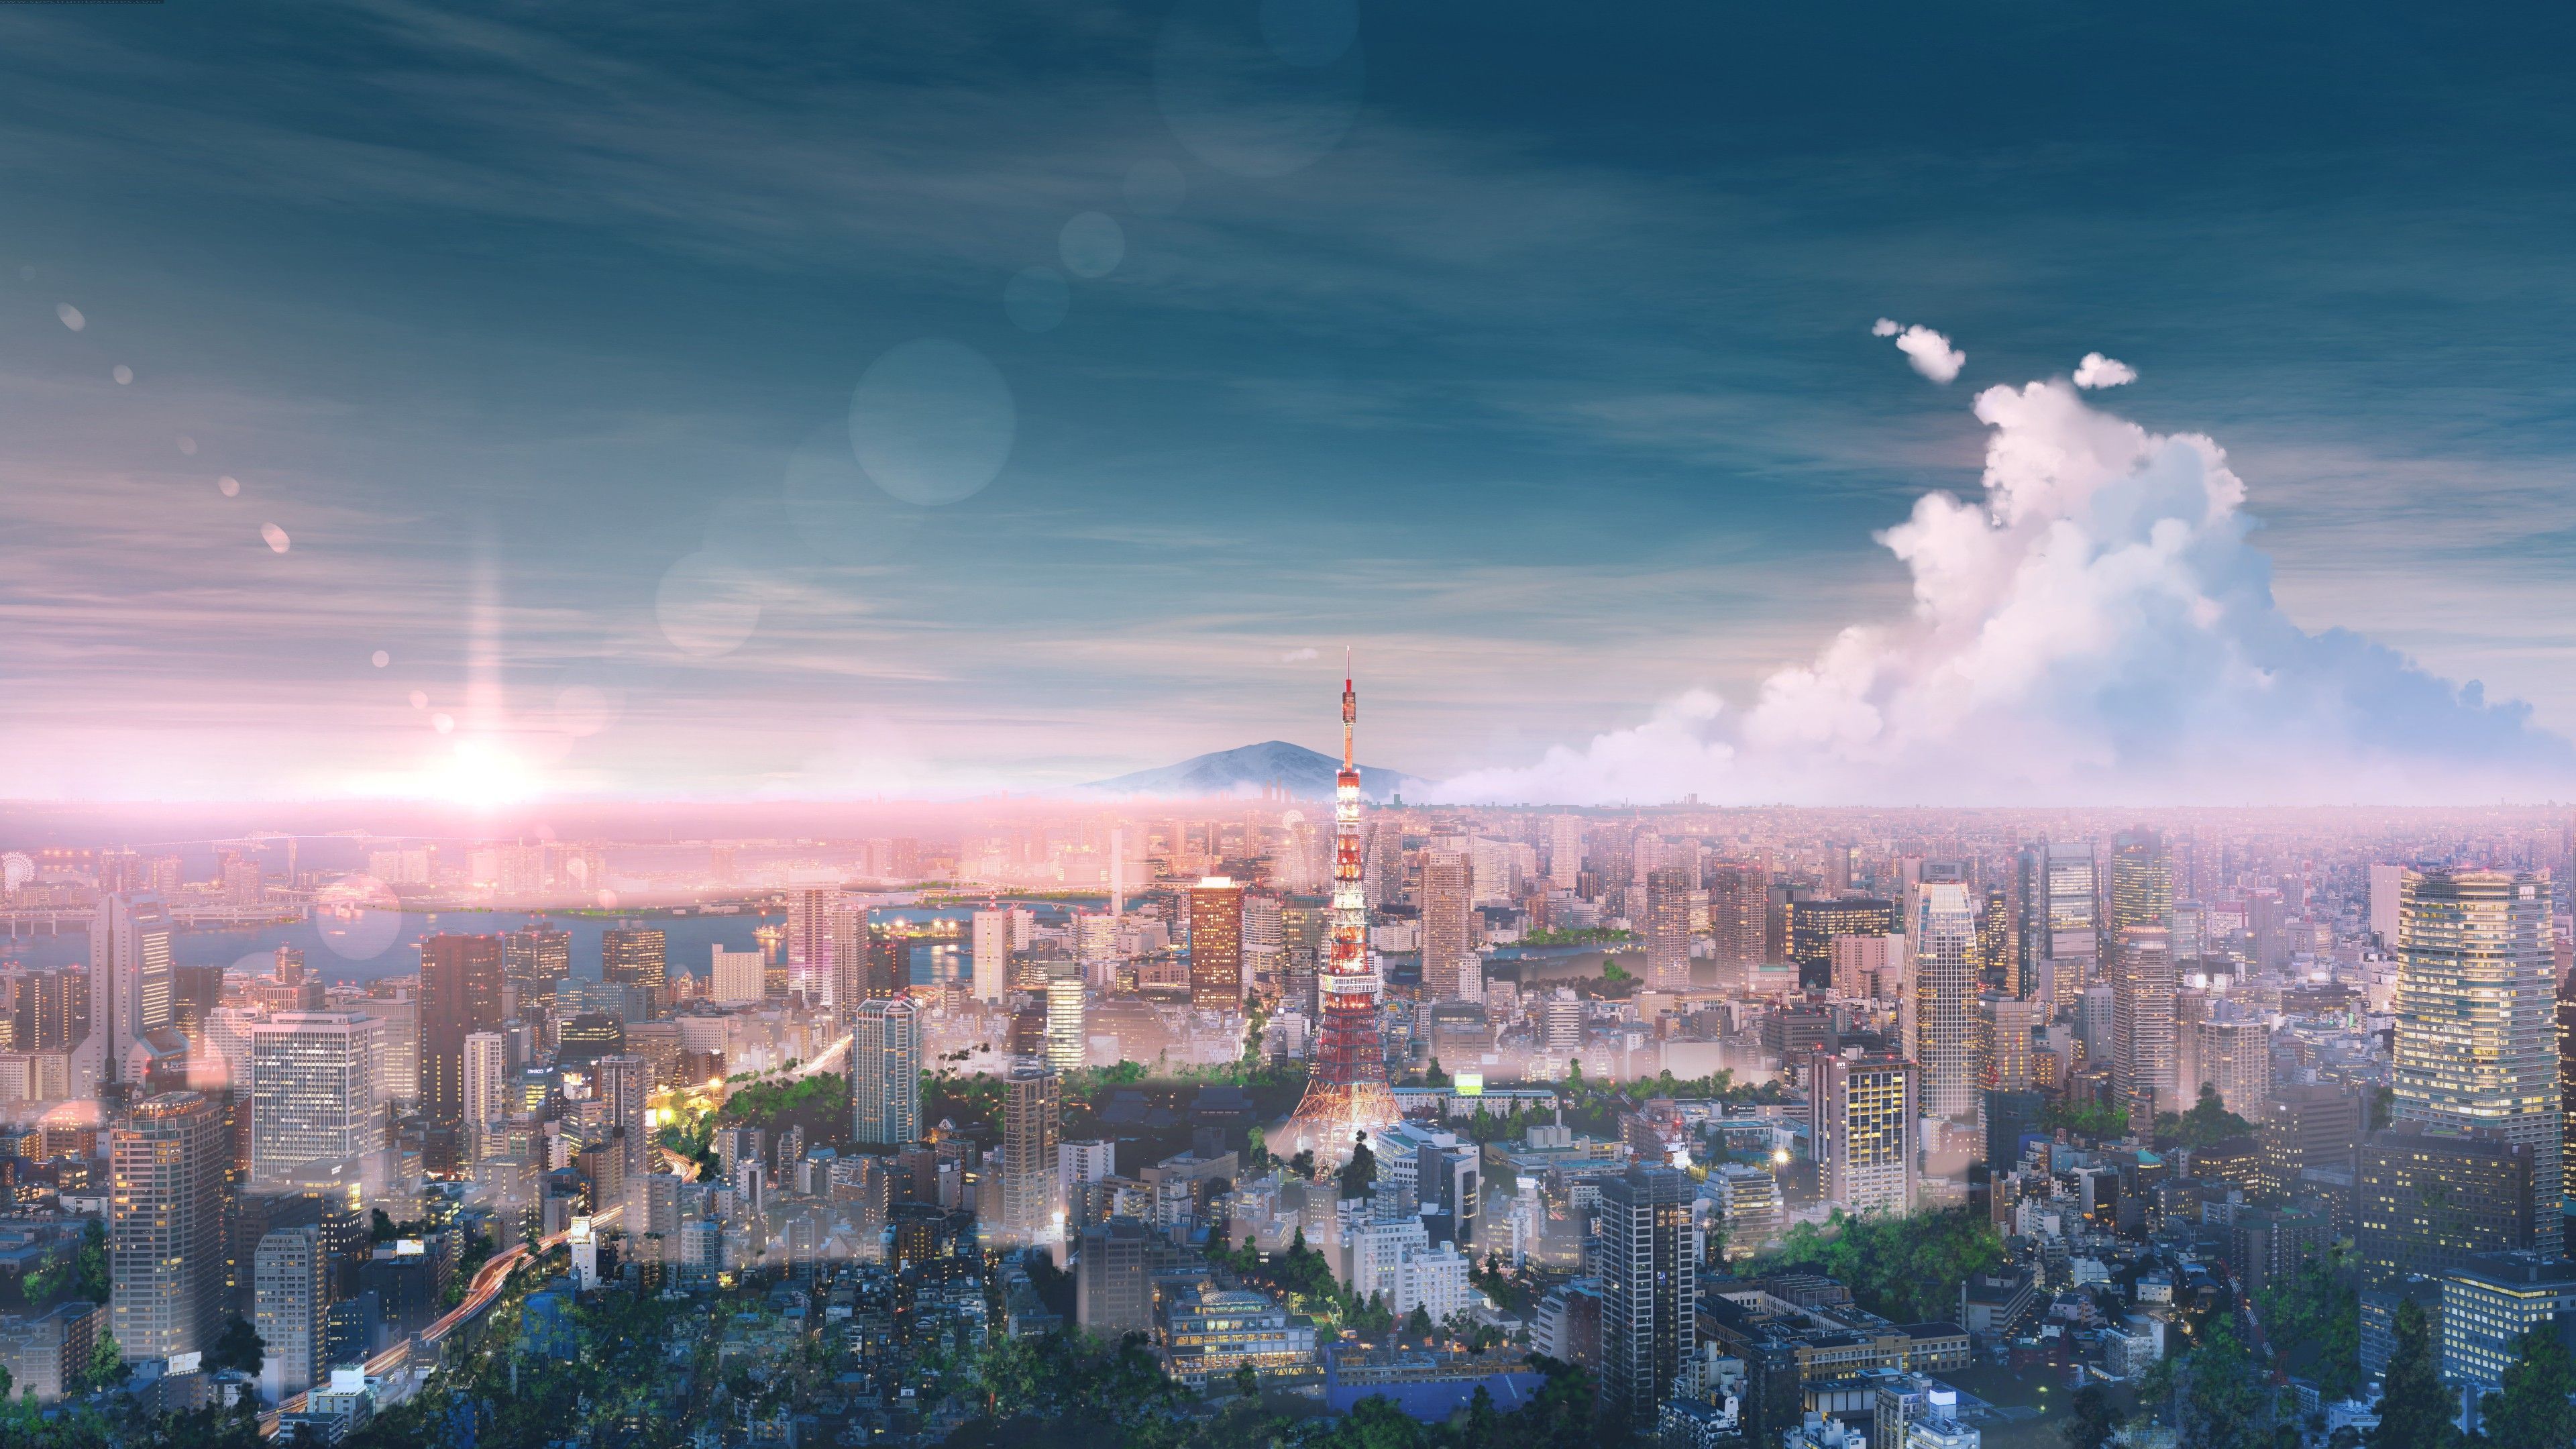 Hình nền anime Tokyo - Hình nền anime Tokyo sẽ đưa bạn vào một thế giới đầy màu sắc và phấn khích của các nhân vật anime. Thưởng thức hình nền này sẽ khiến bạn cảm thấy như đang sống trong một câu chuyện tranh đích thực.